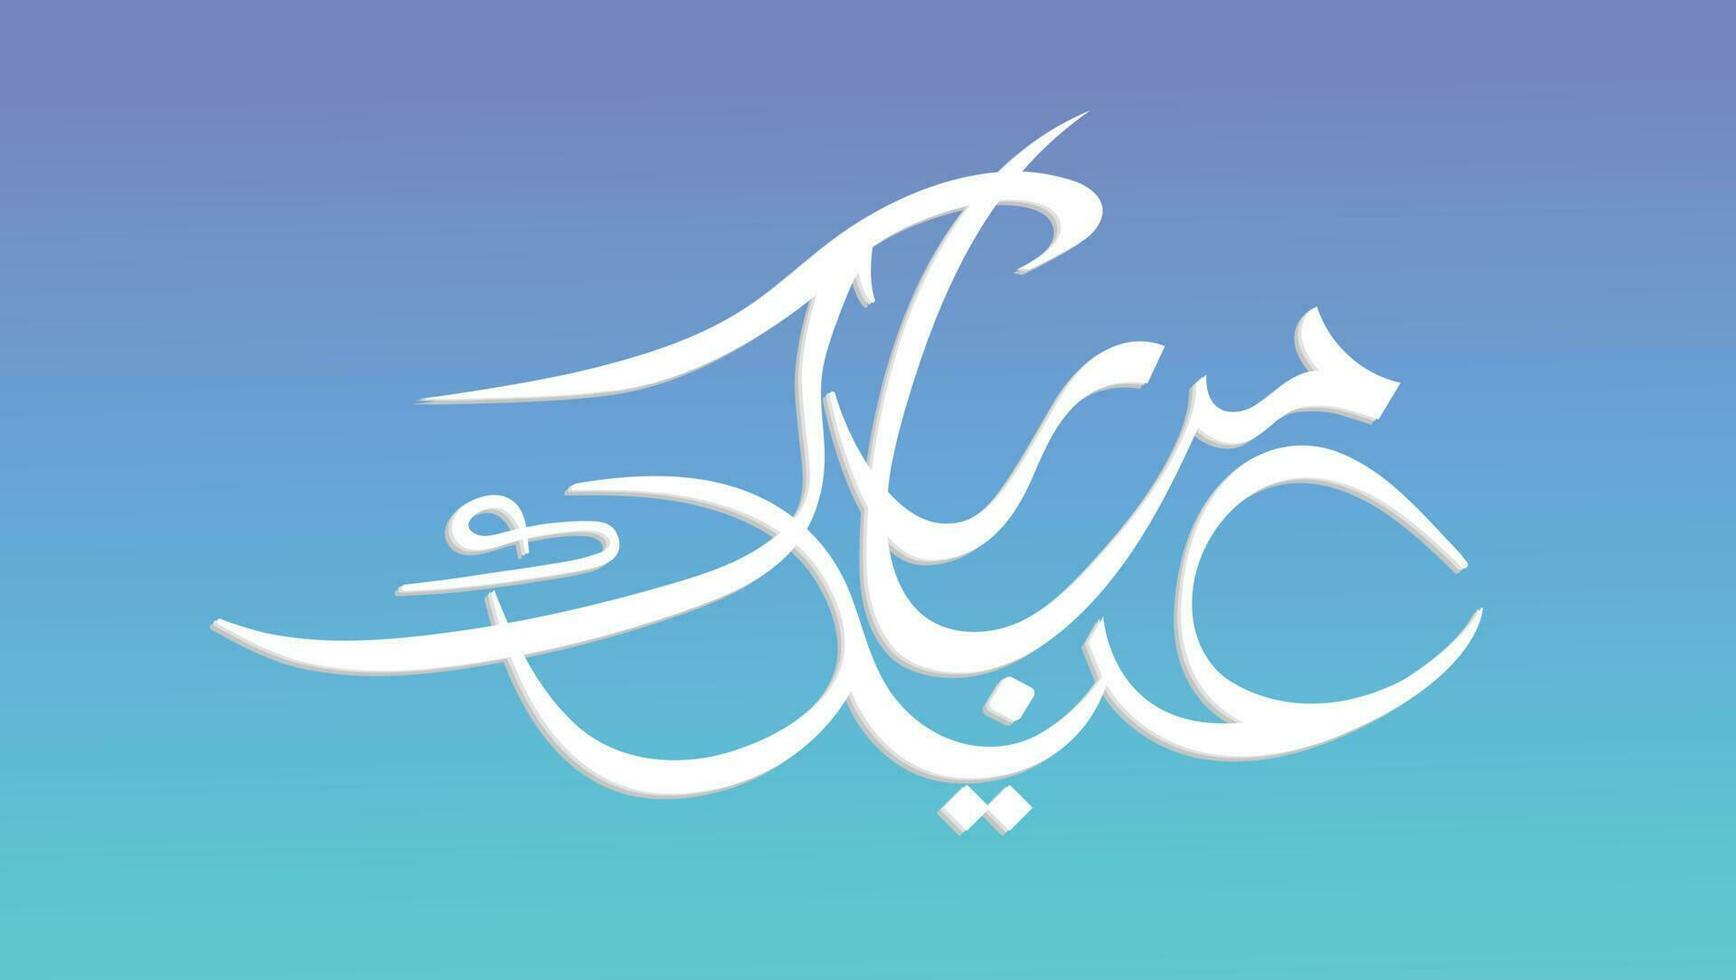 urdu caligrafía de eid Mubarak celebracion de musulmán comunidad festival vector ilustración